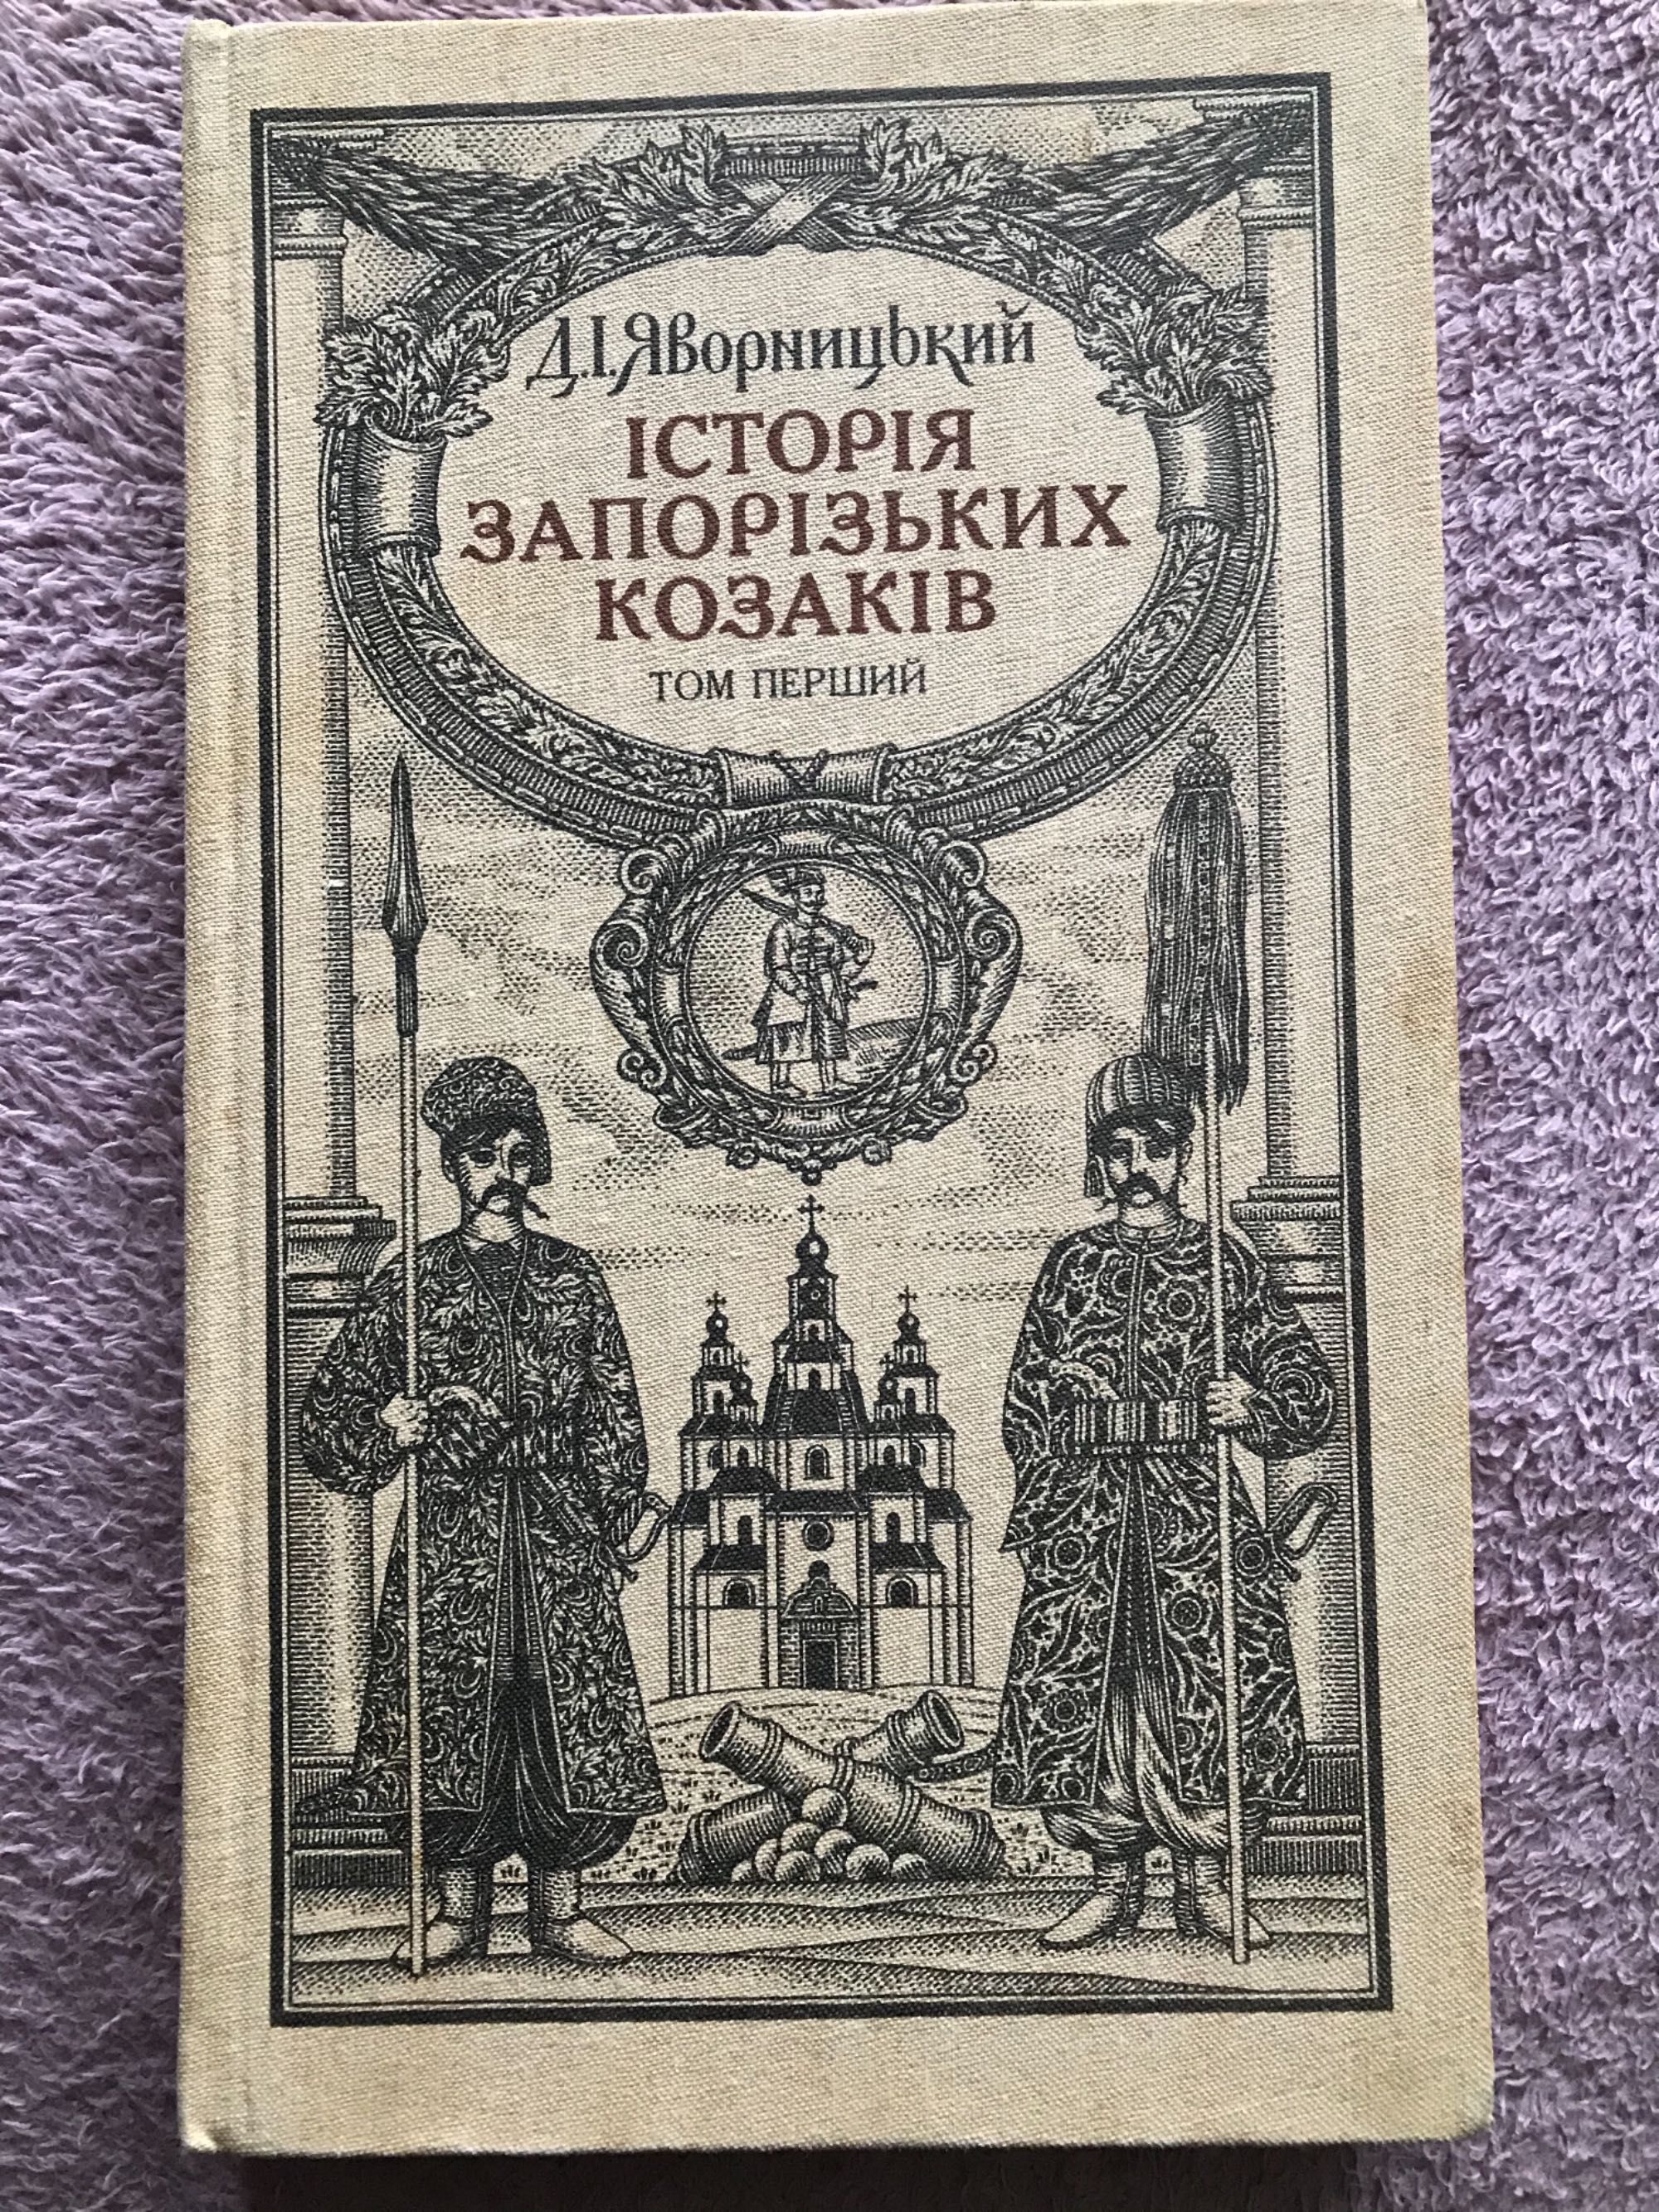 Книга Історія Запорізьких Козаків, в 3 томах 1990 рік, ціна за 3 томи